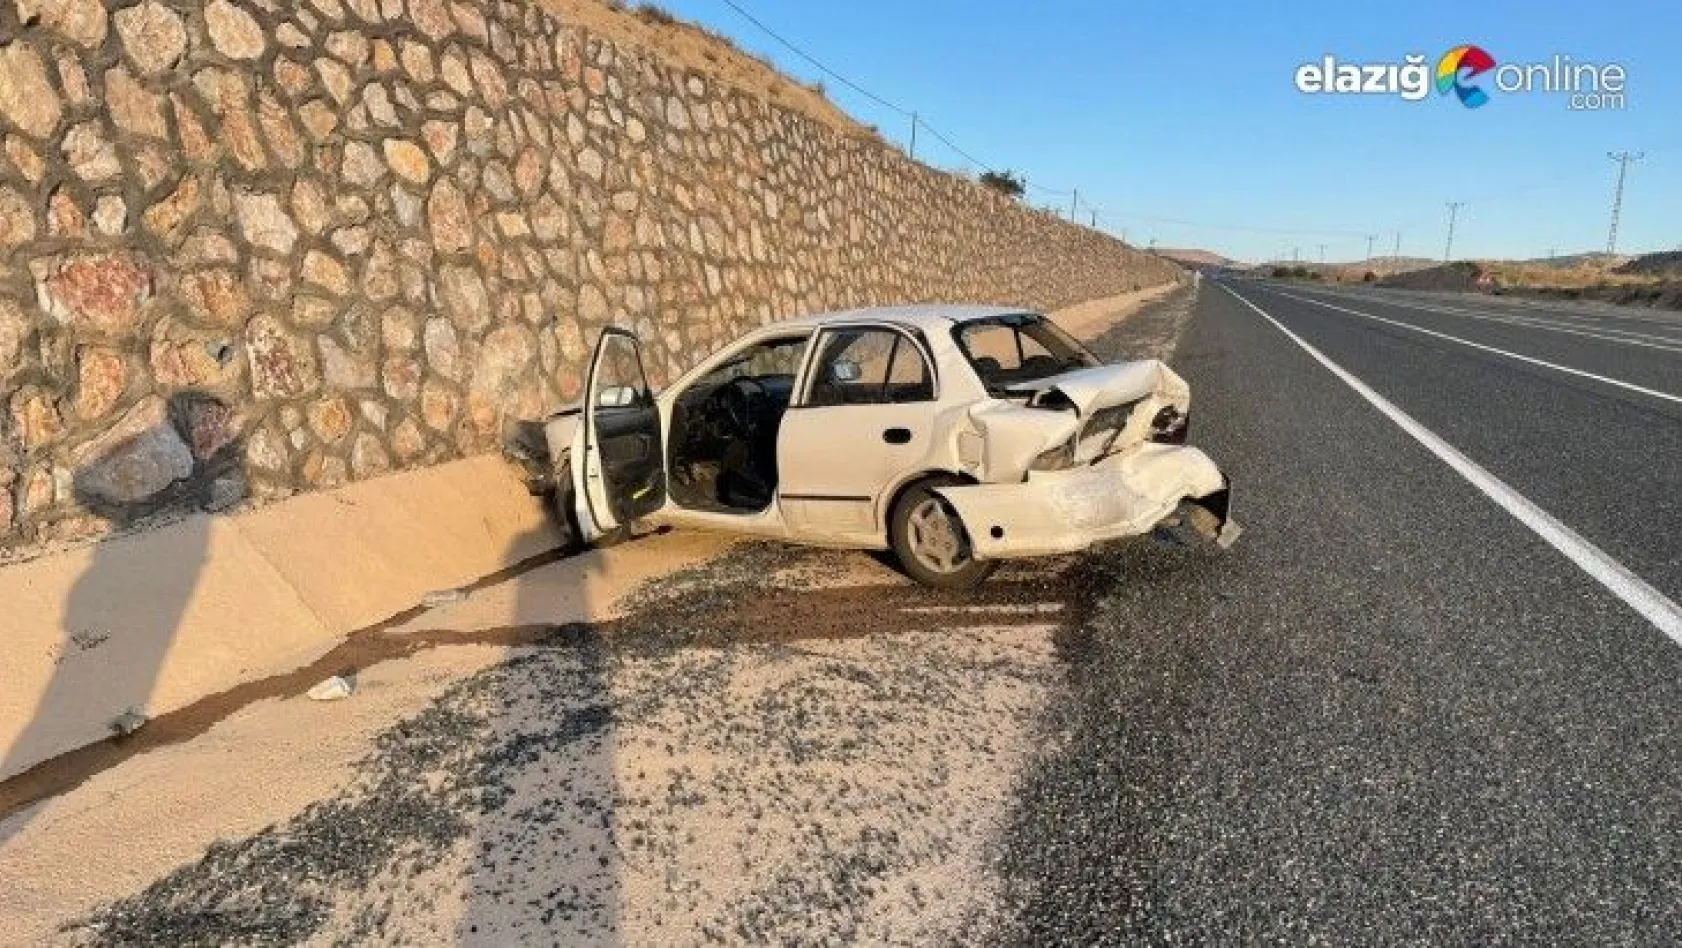 Elazığ Keban karayolunda trafik kazası